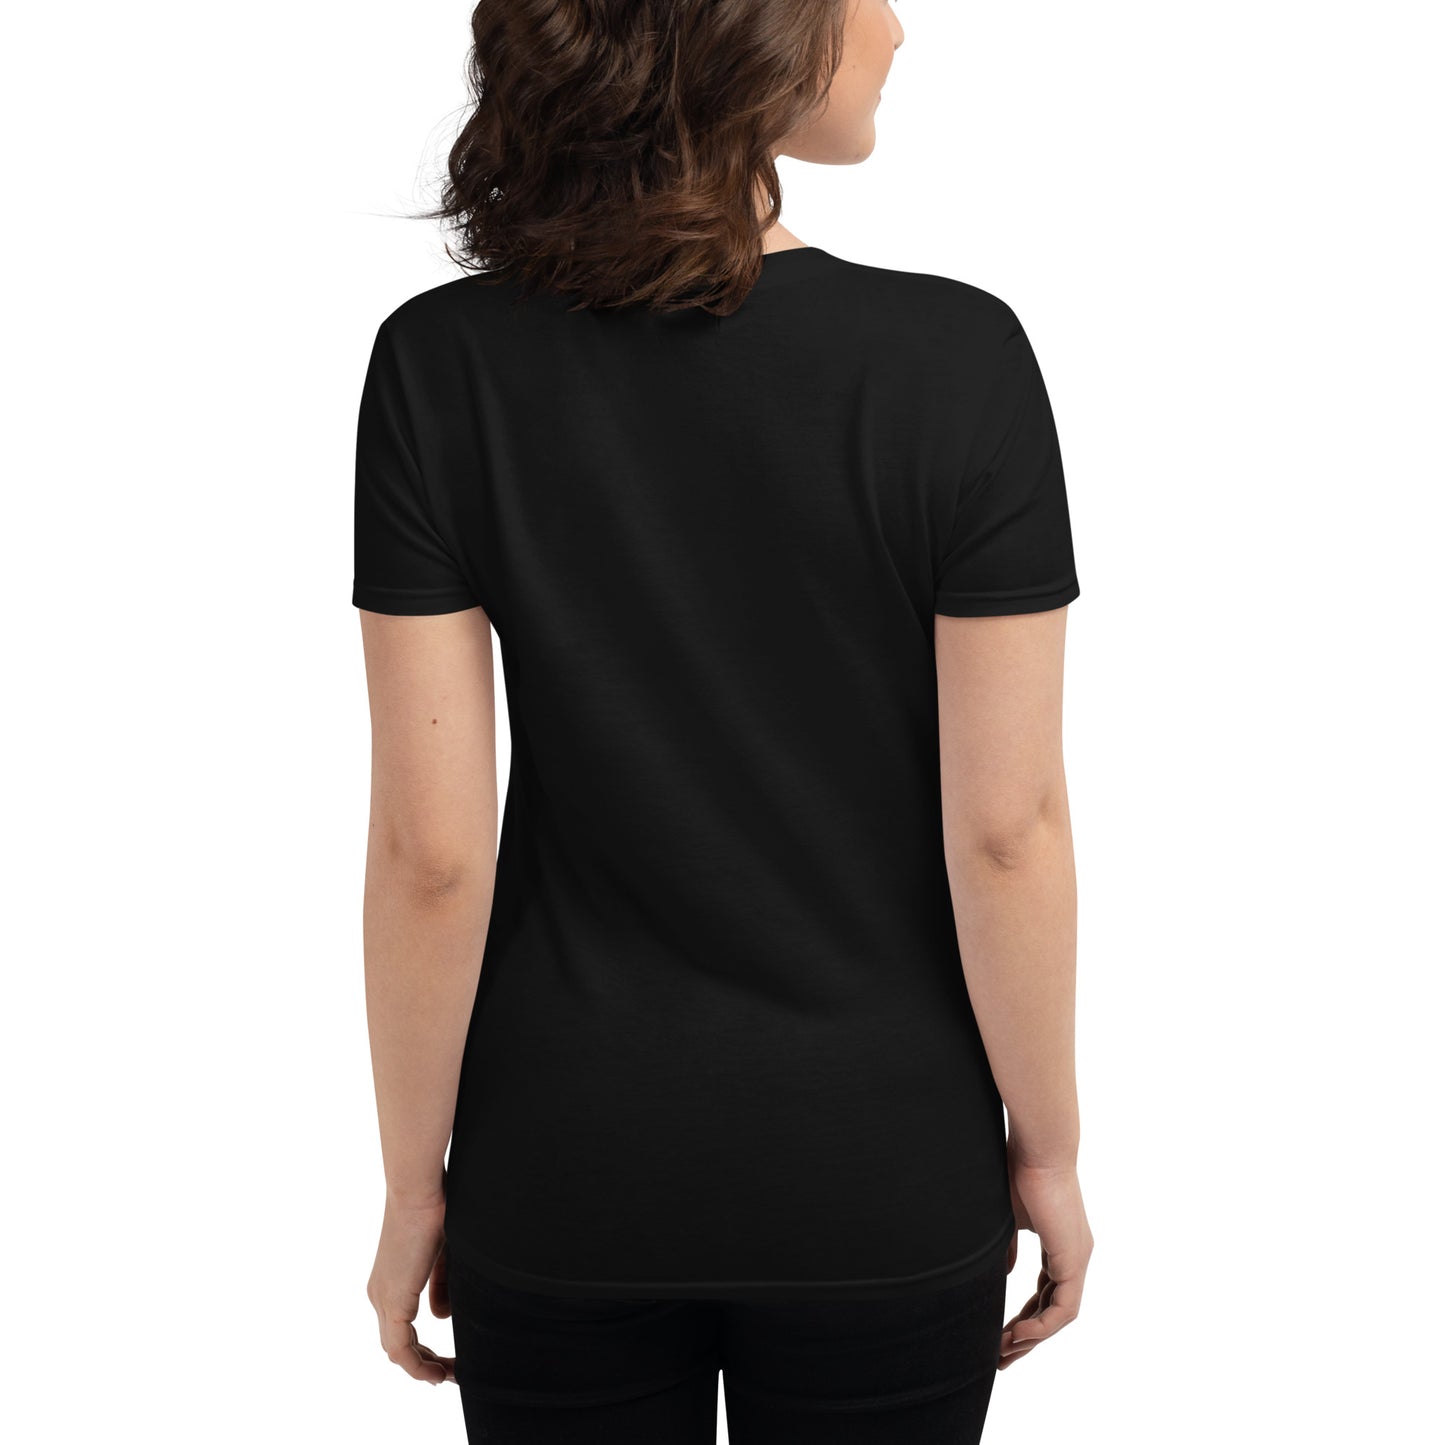 More + Better Women's short sleeve t-shirt